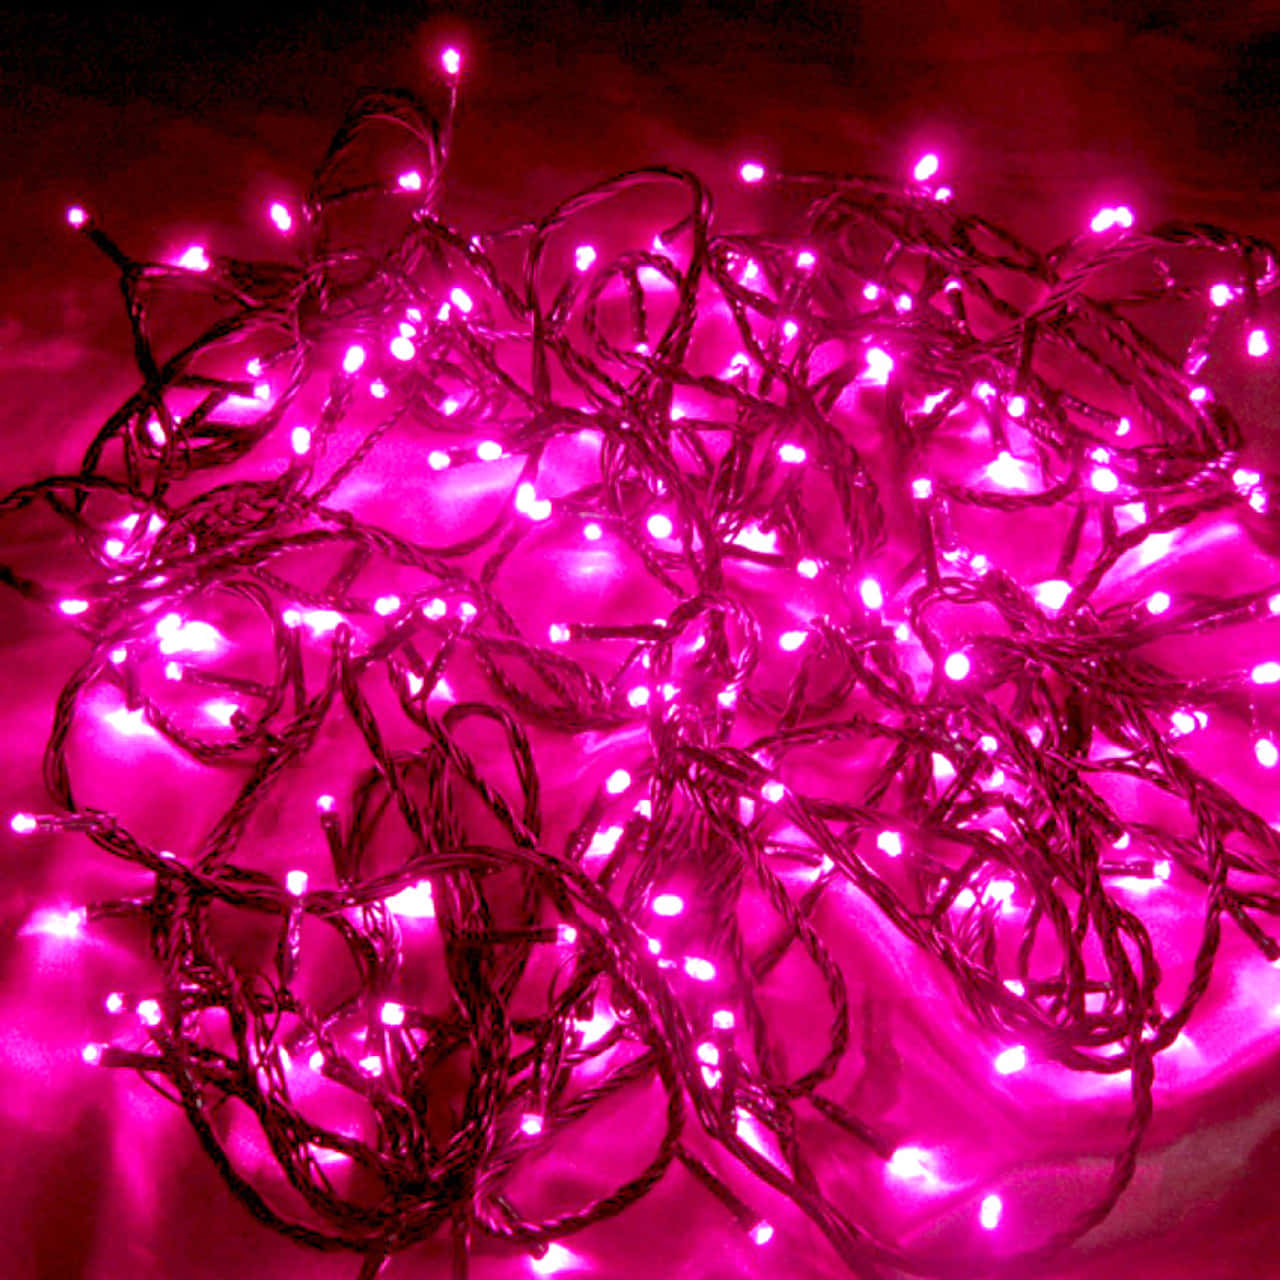 Uncordón De Luces De Hadas En Tono Rosa Colocado A Lo Largo De Una Habitación Crea Un Ambiente Mágico Y Cálido. Fondo de pantalla